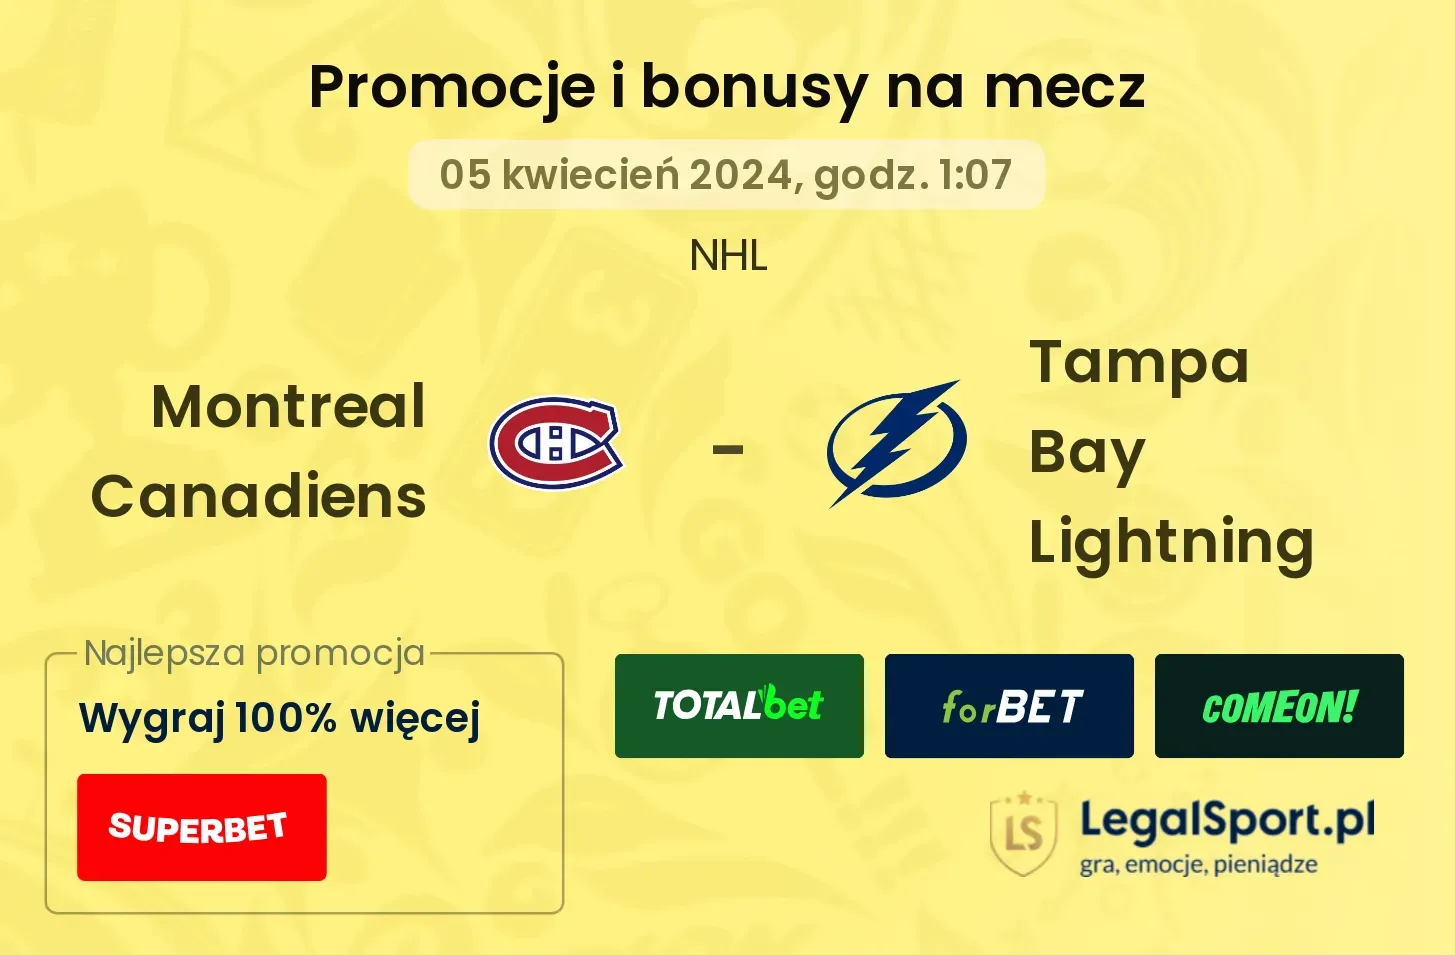 Montreal Canadiens - Tampa Bay Lightning promocje bonusy na mecz